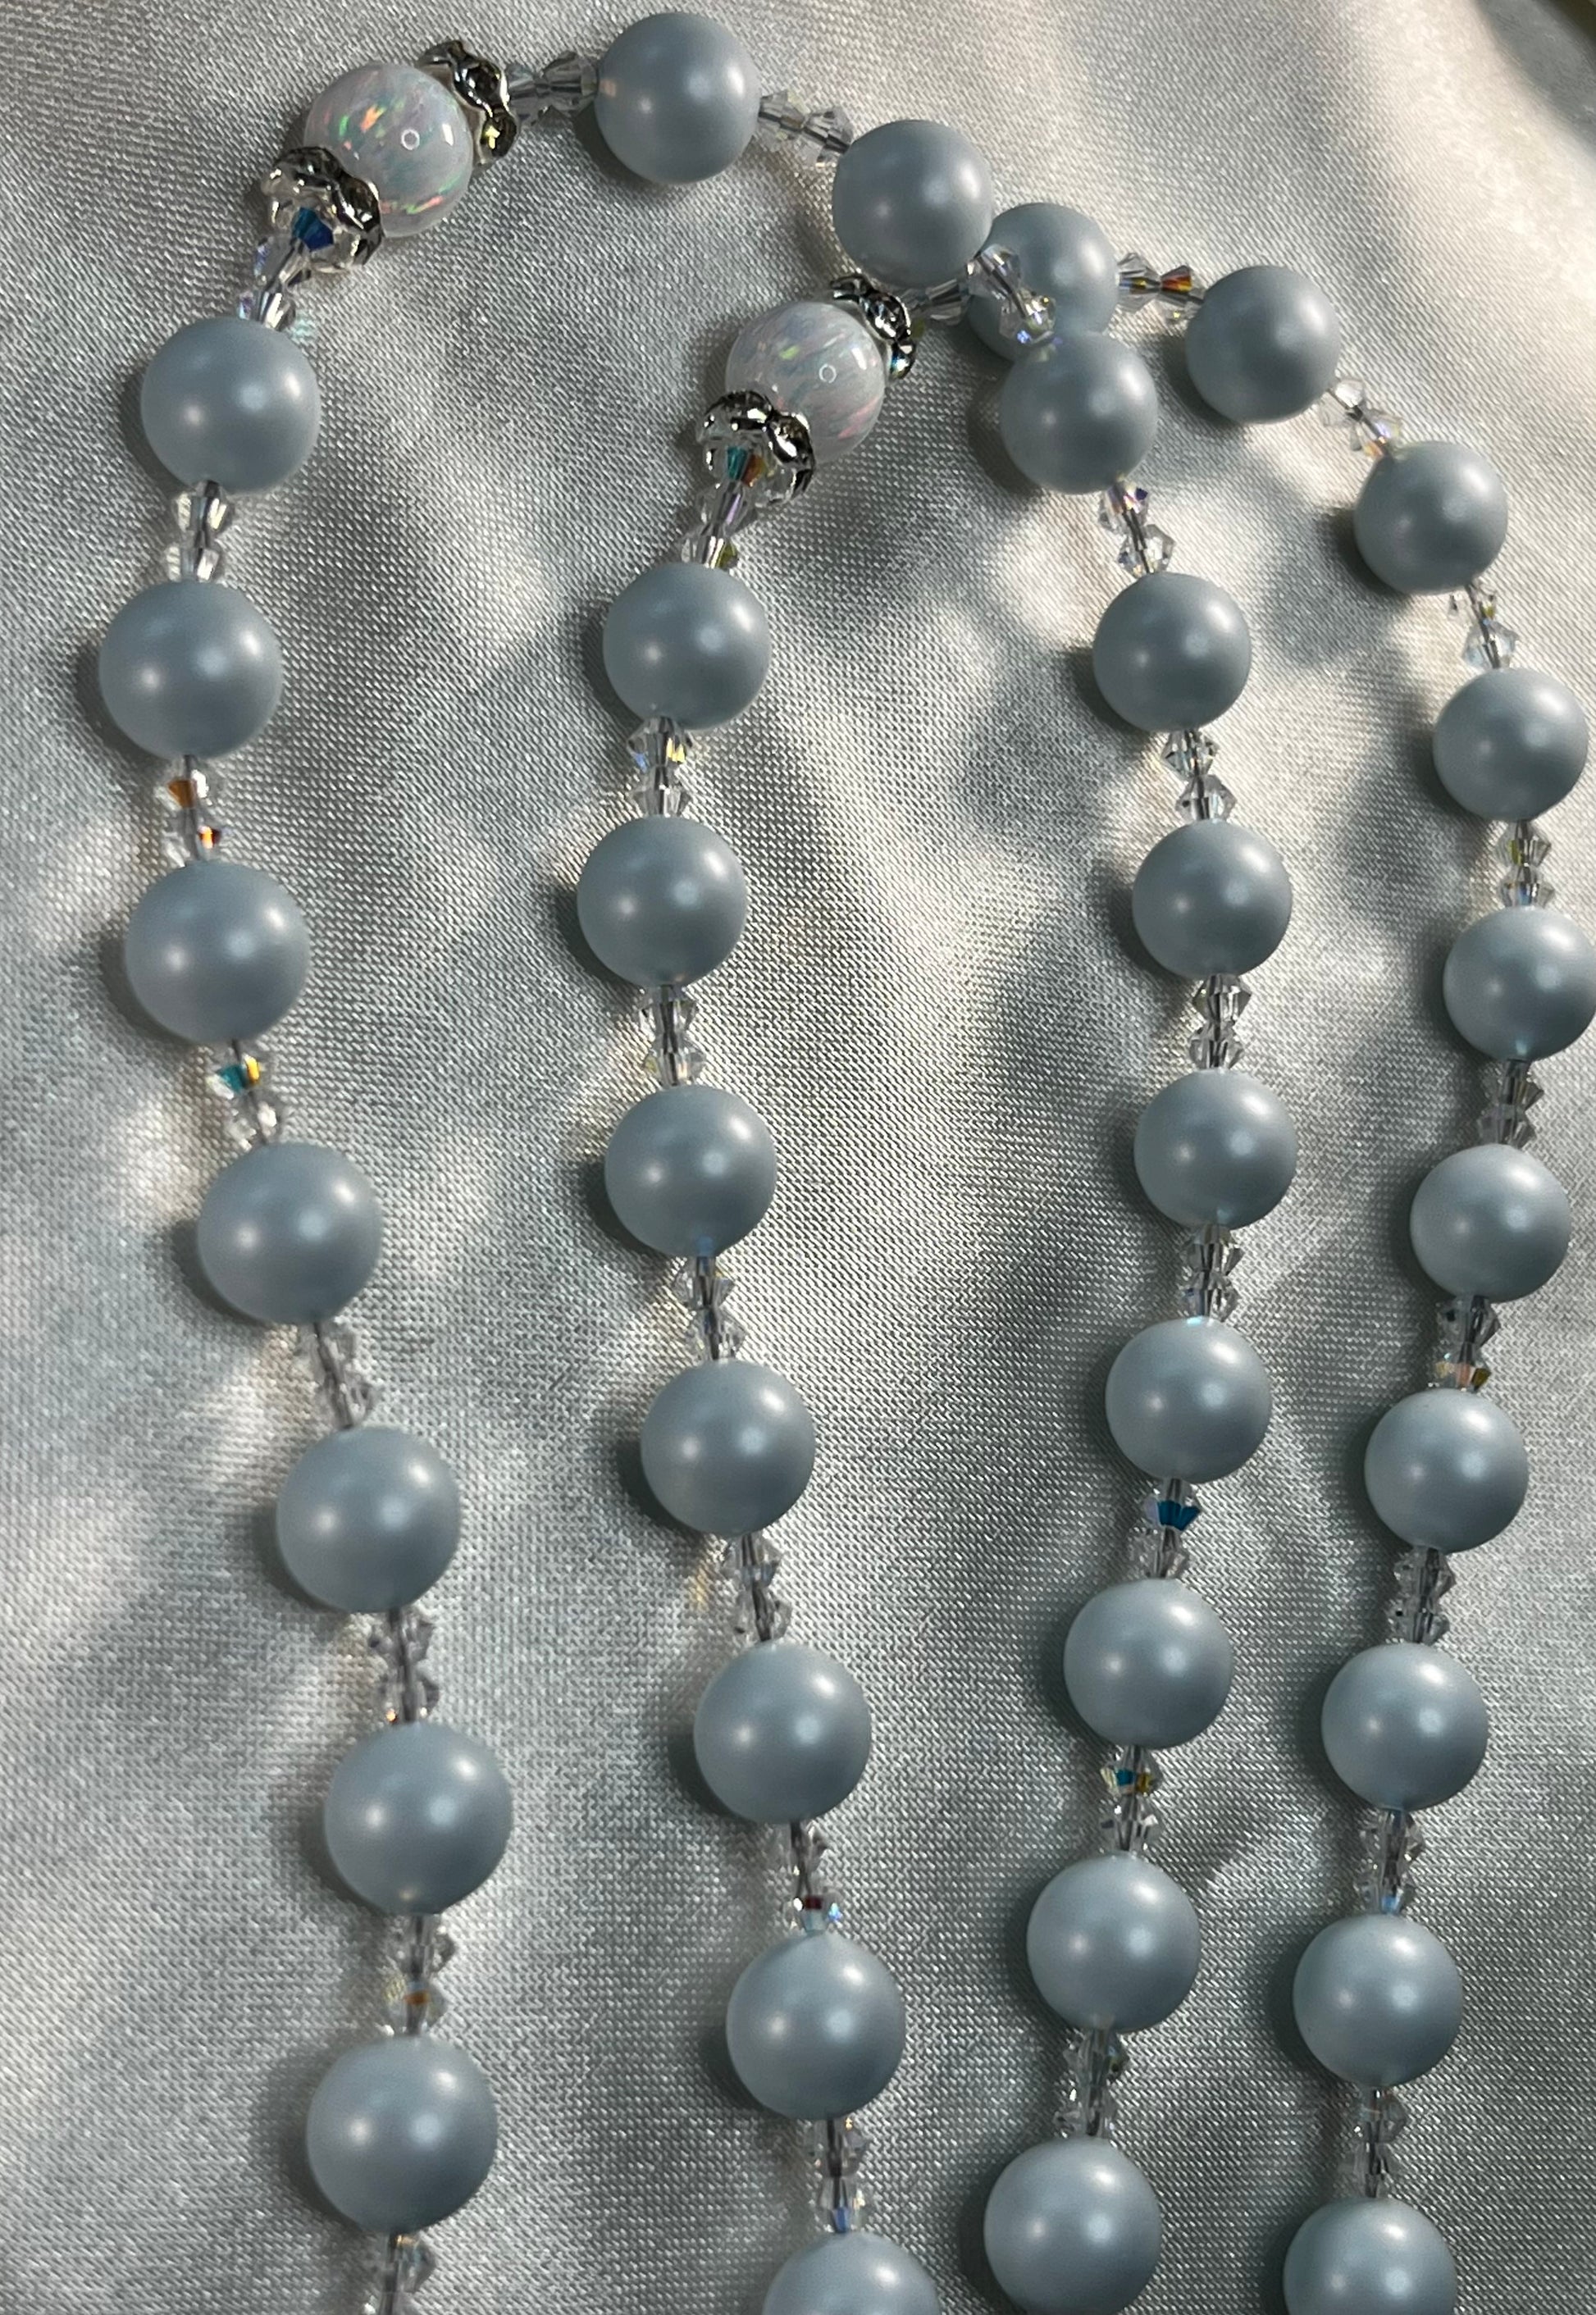 Pastel Blue Swarovski Pearls, Swarovski Crystal spacers, Rhinestone Crystal spacers, White Opals